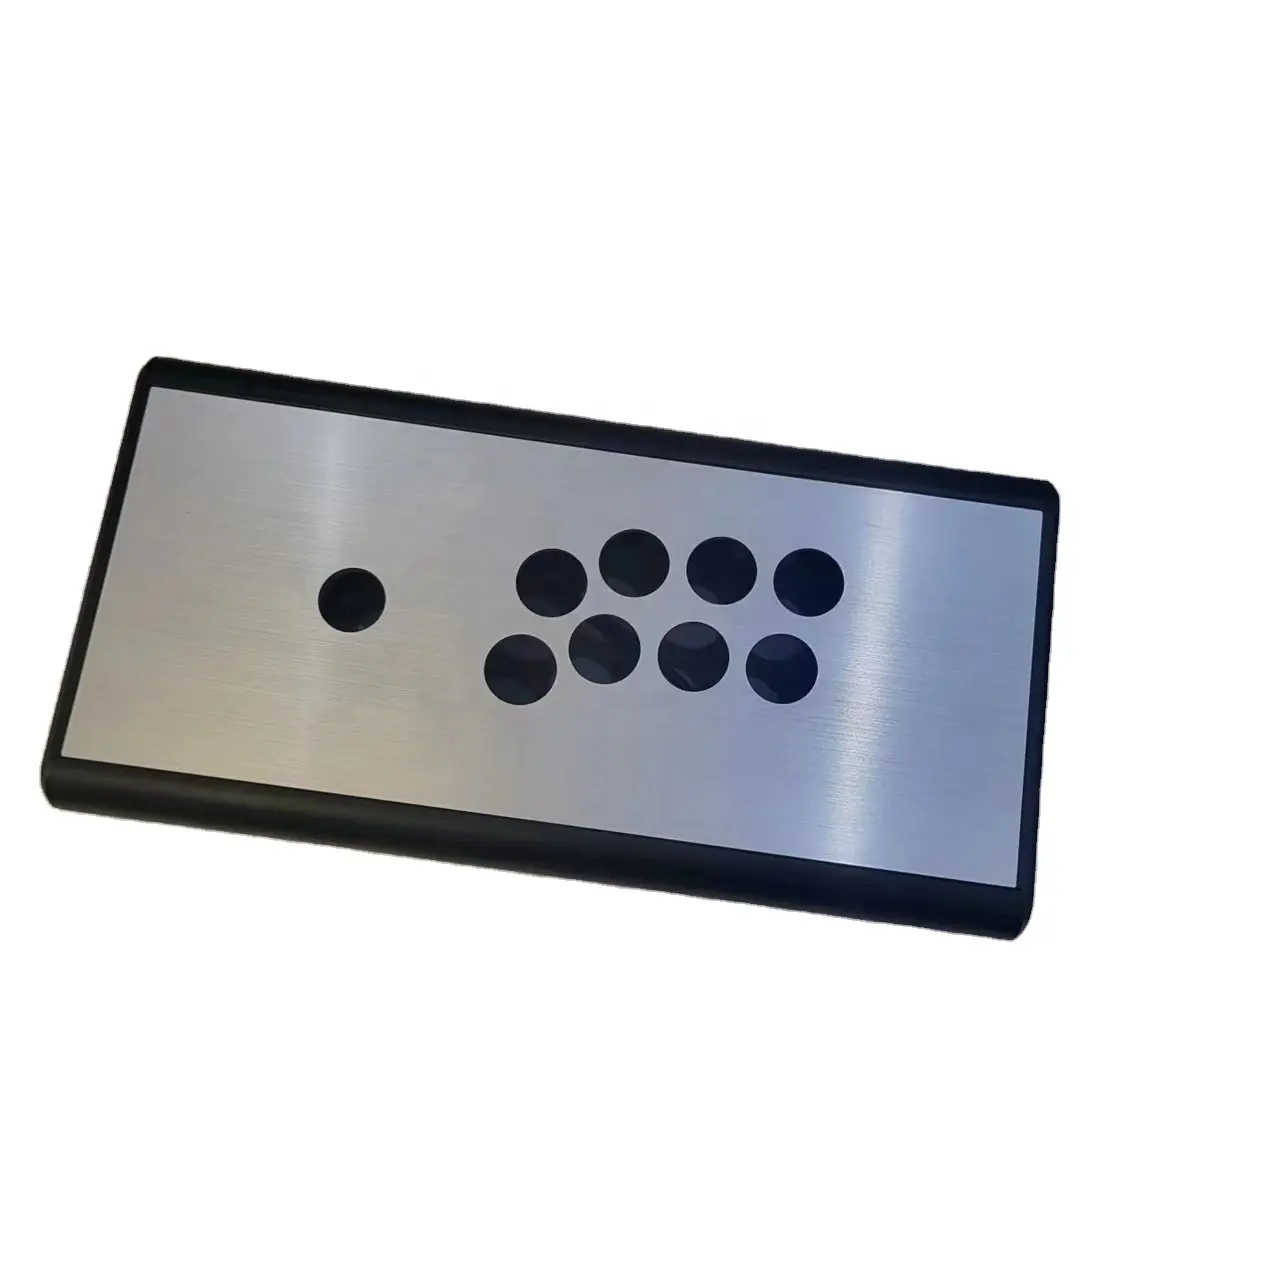 धातु ब्रश पैनल DIY किट आर्केड खेल जॉयस्टिक बॉक्स अनुकूलन Eimpty hitbox आर्केड बॉक्स Hitbox नियंत्रक किट भागों